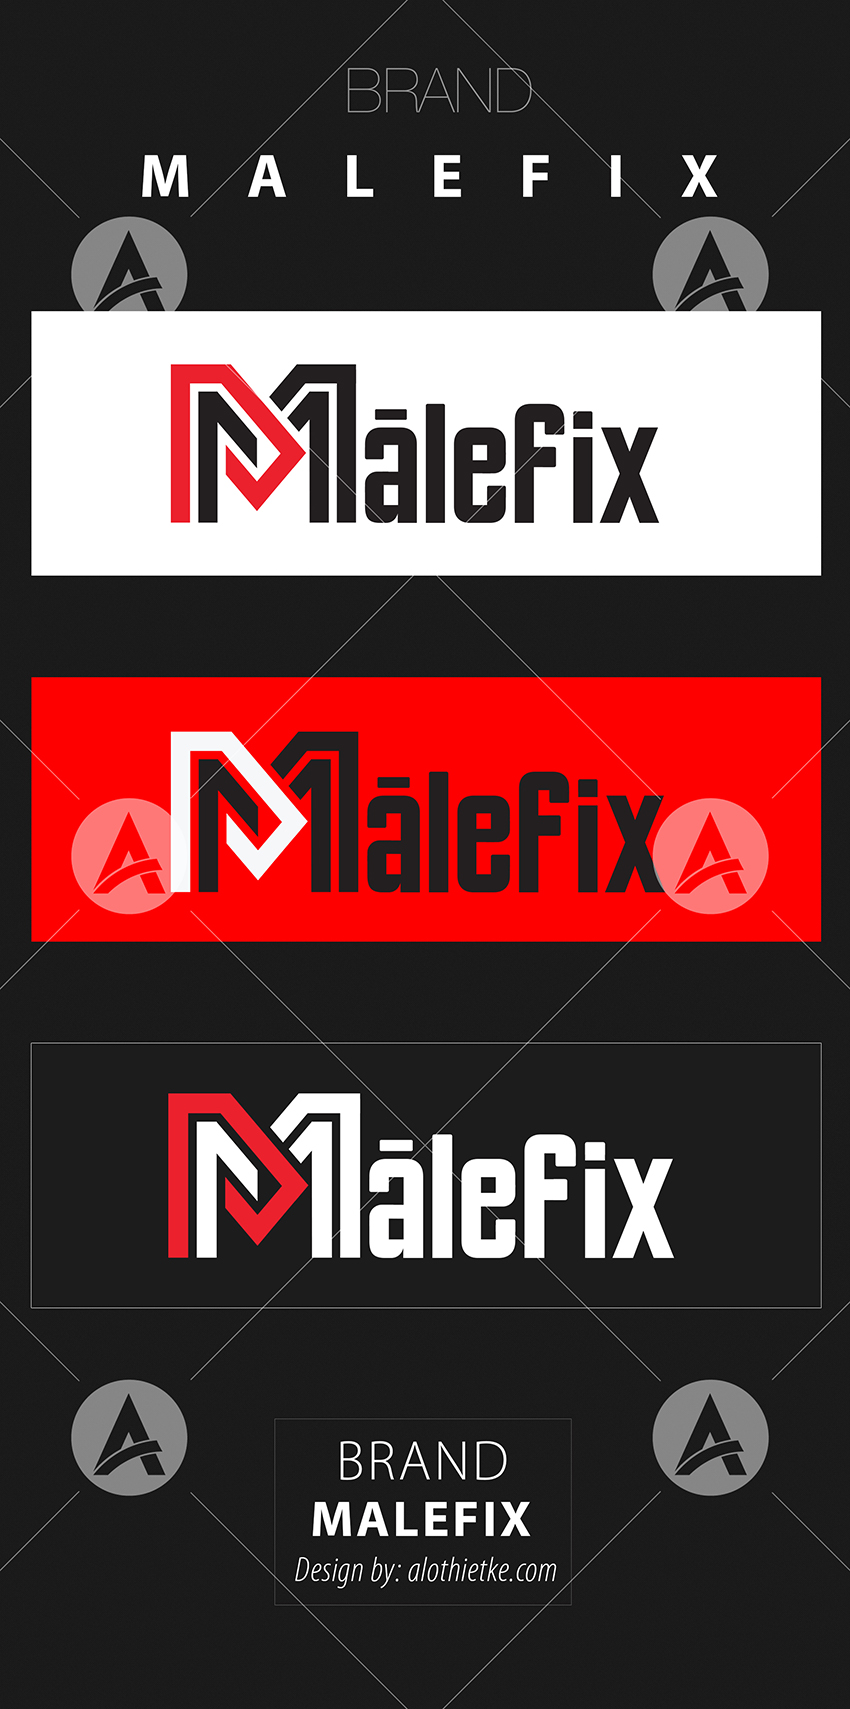 Malefix_v07.jpg